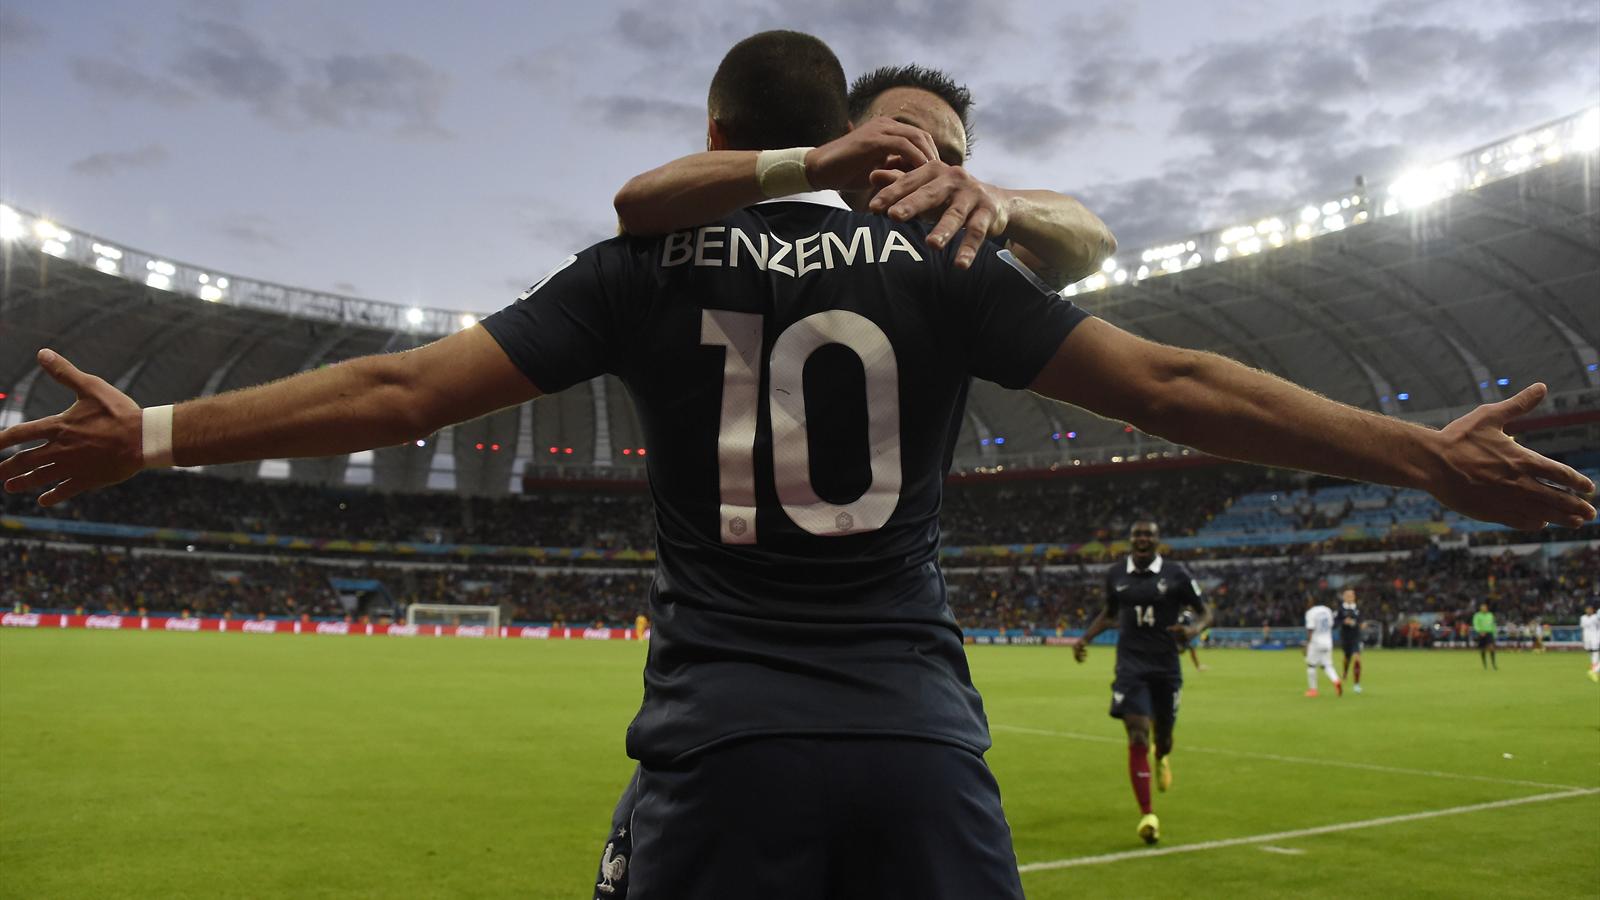 CDM-2014- France-Honduras (3-0): Les Bleus étrillent le Honduras, Benzema rejoint Neymar